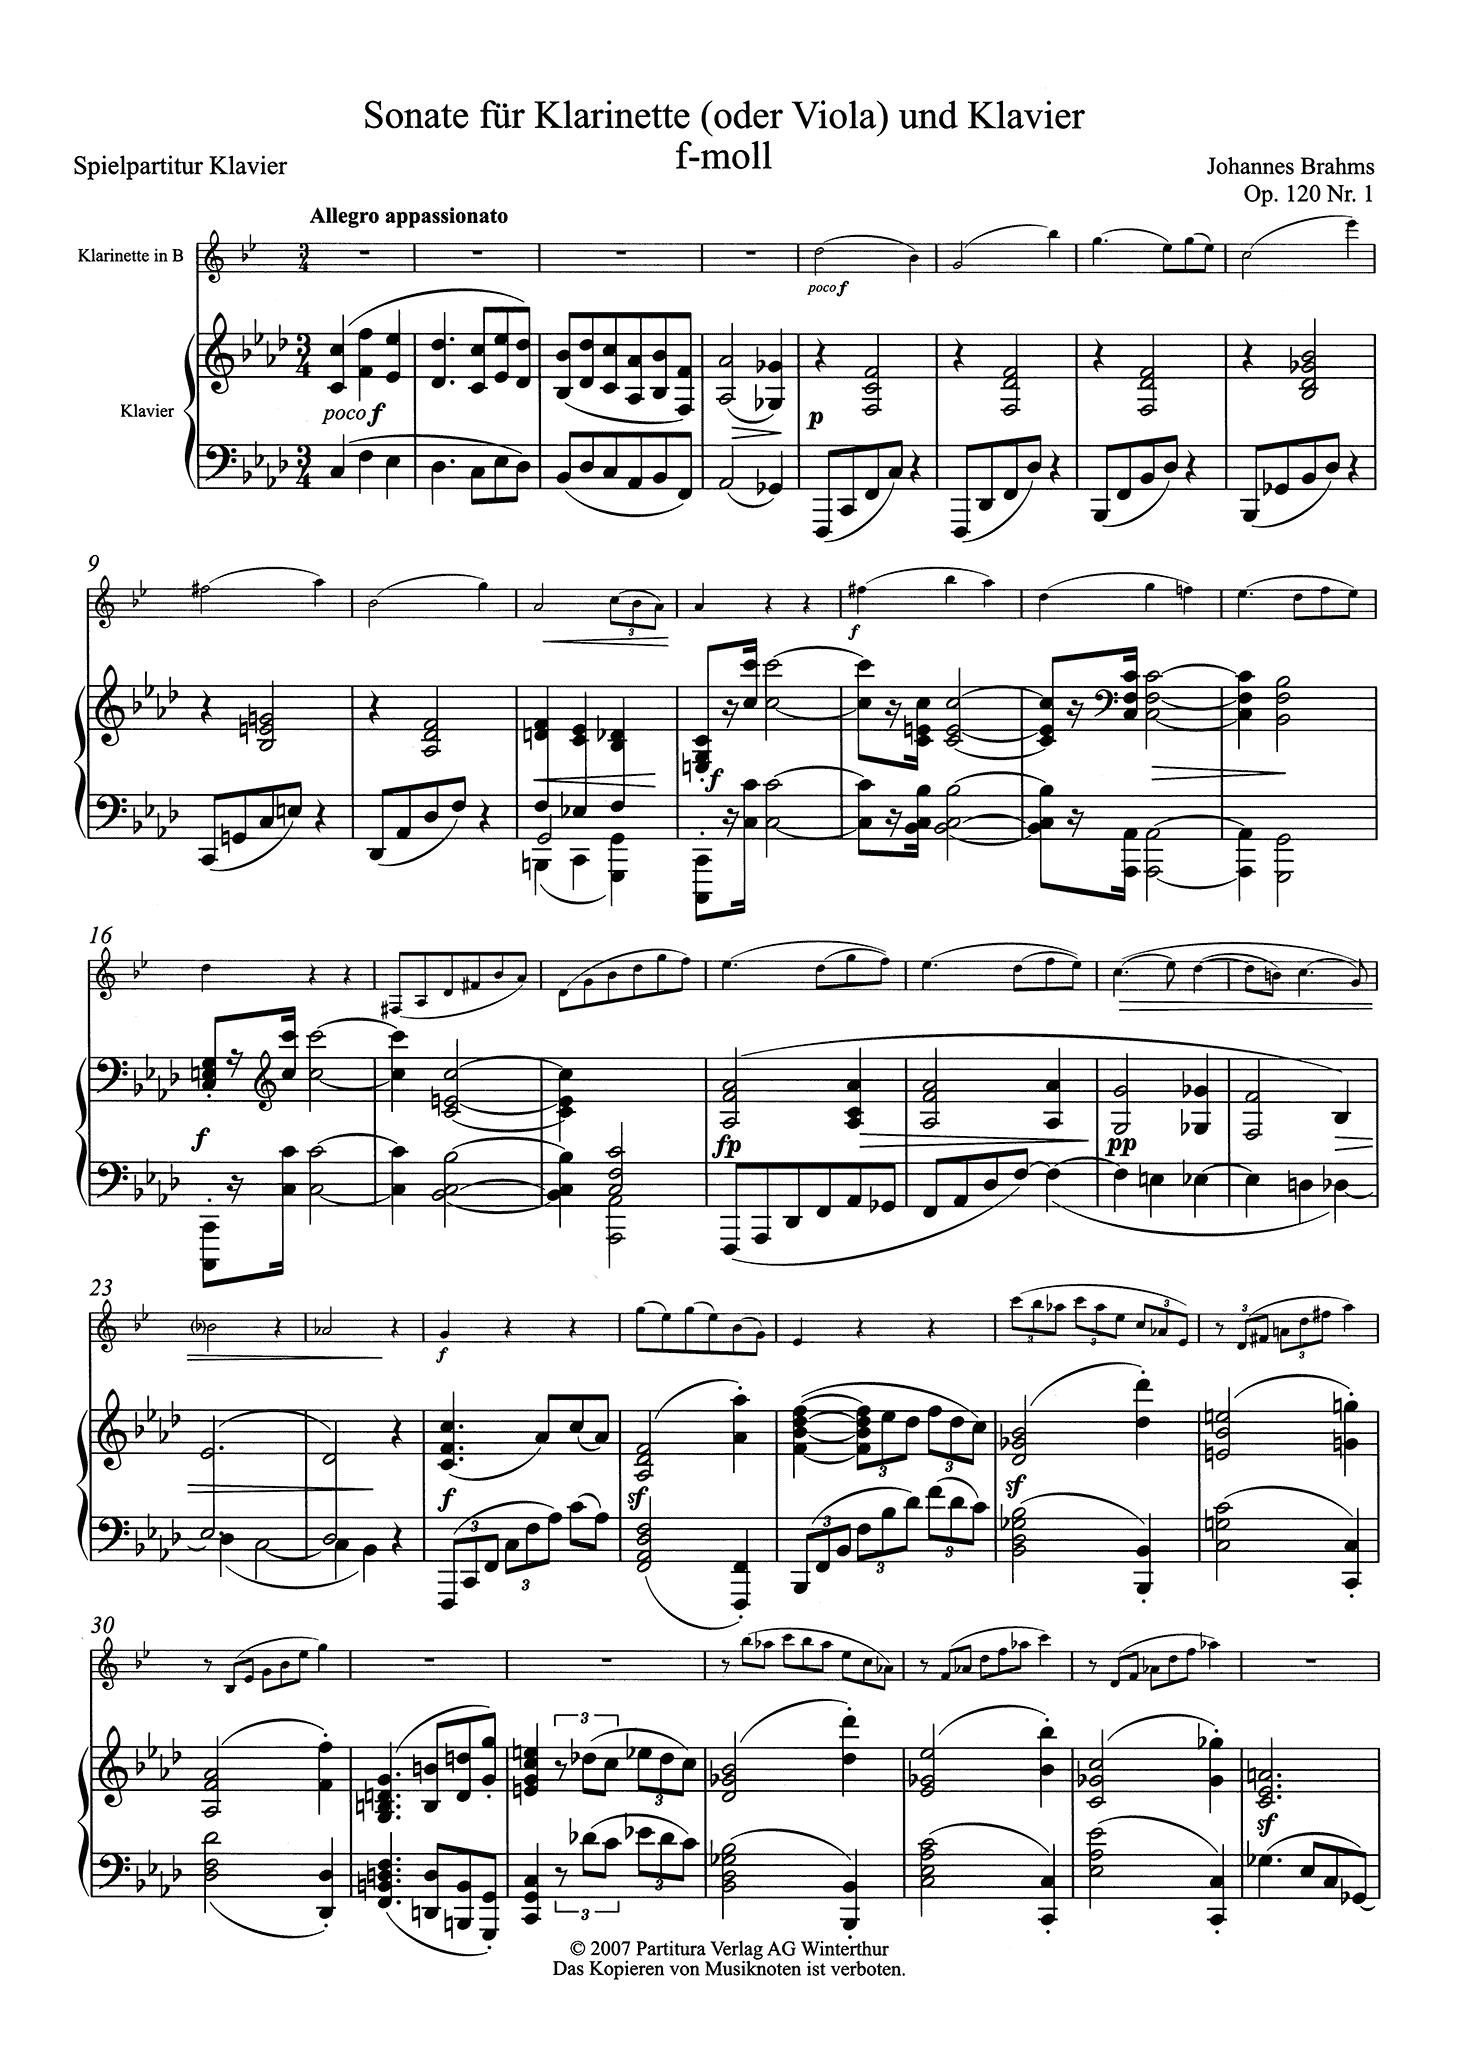 Sonata in F Minor, Op. 120 No. 1 - Piano score movement 1